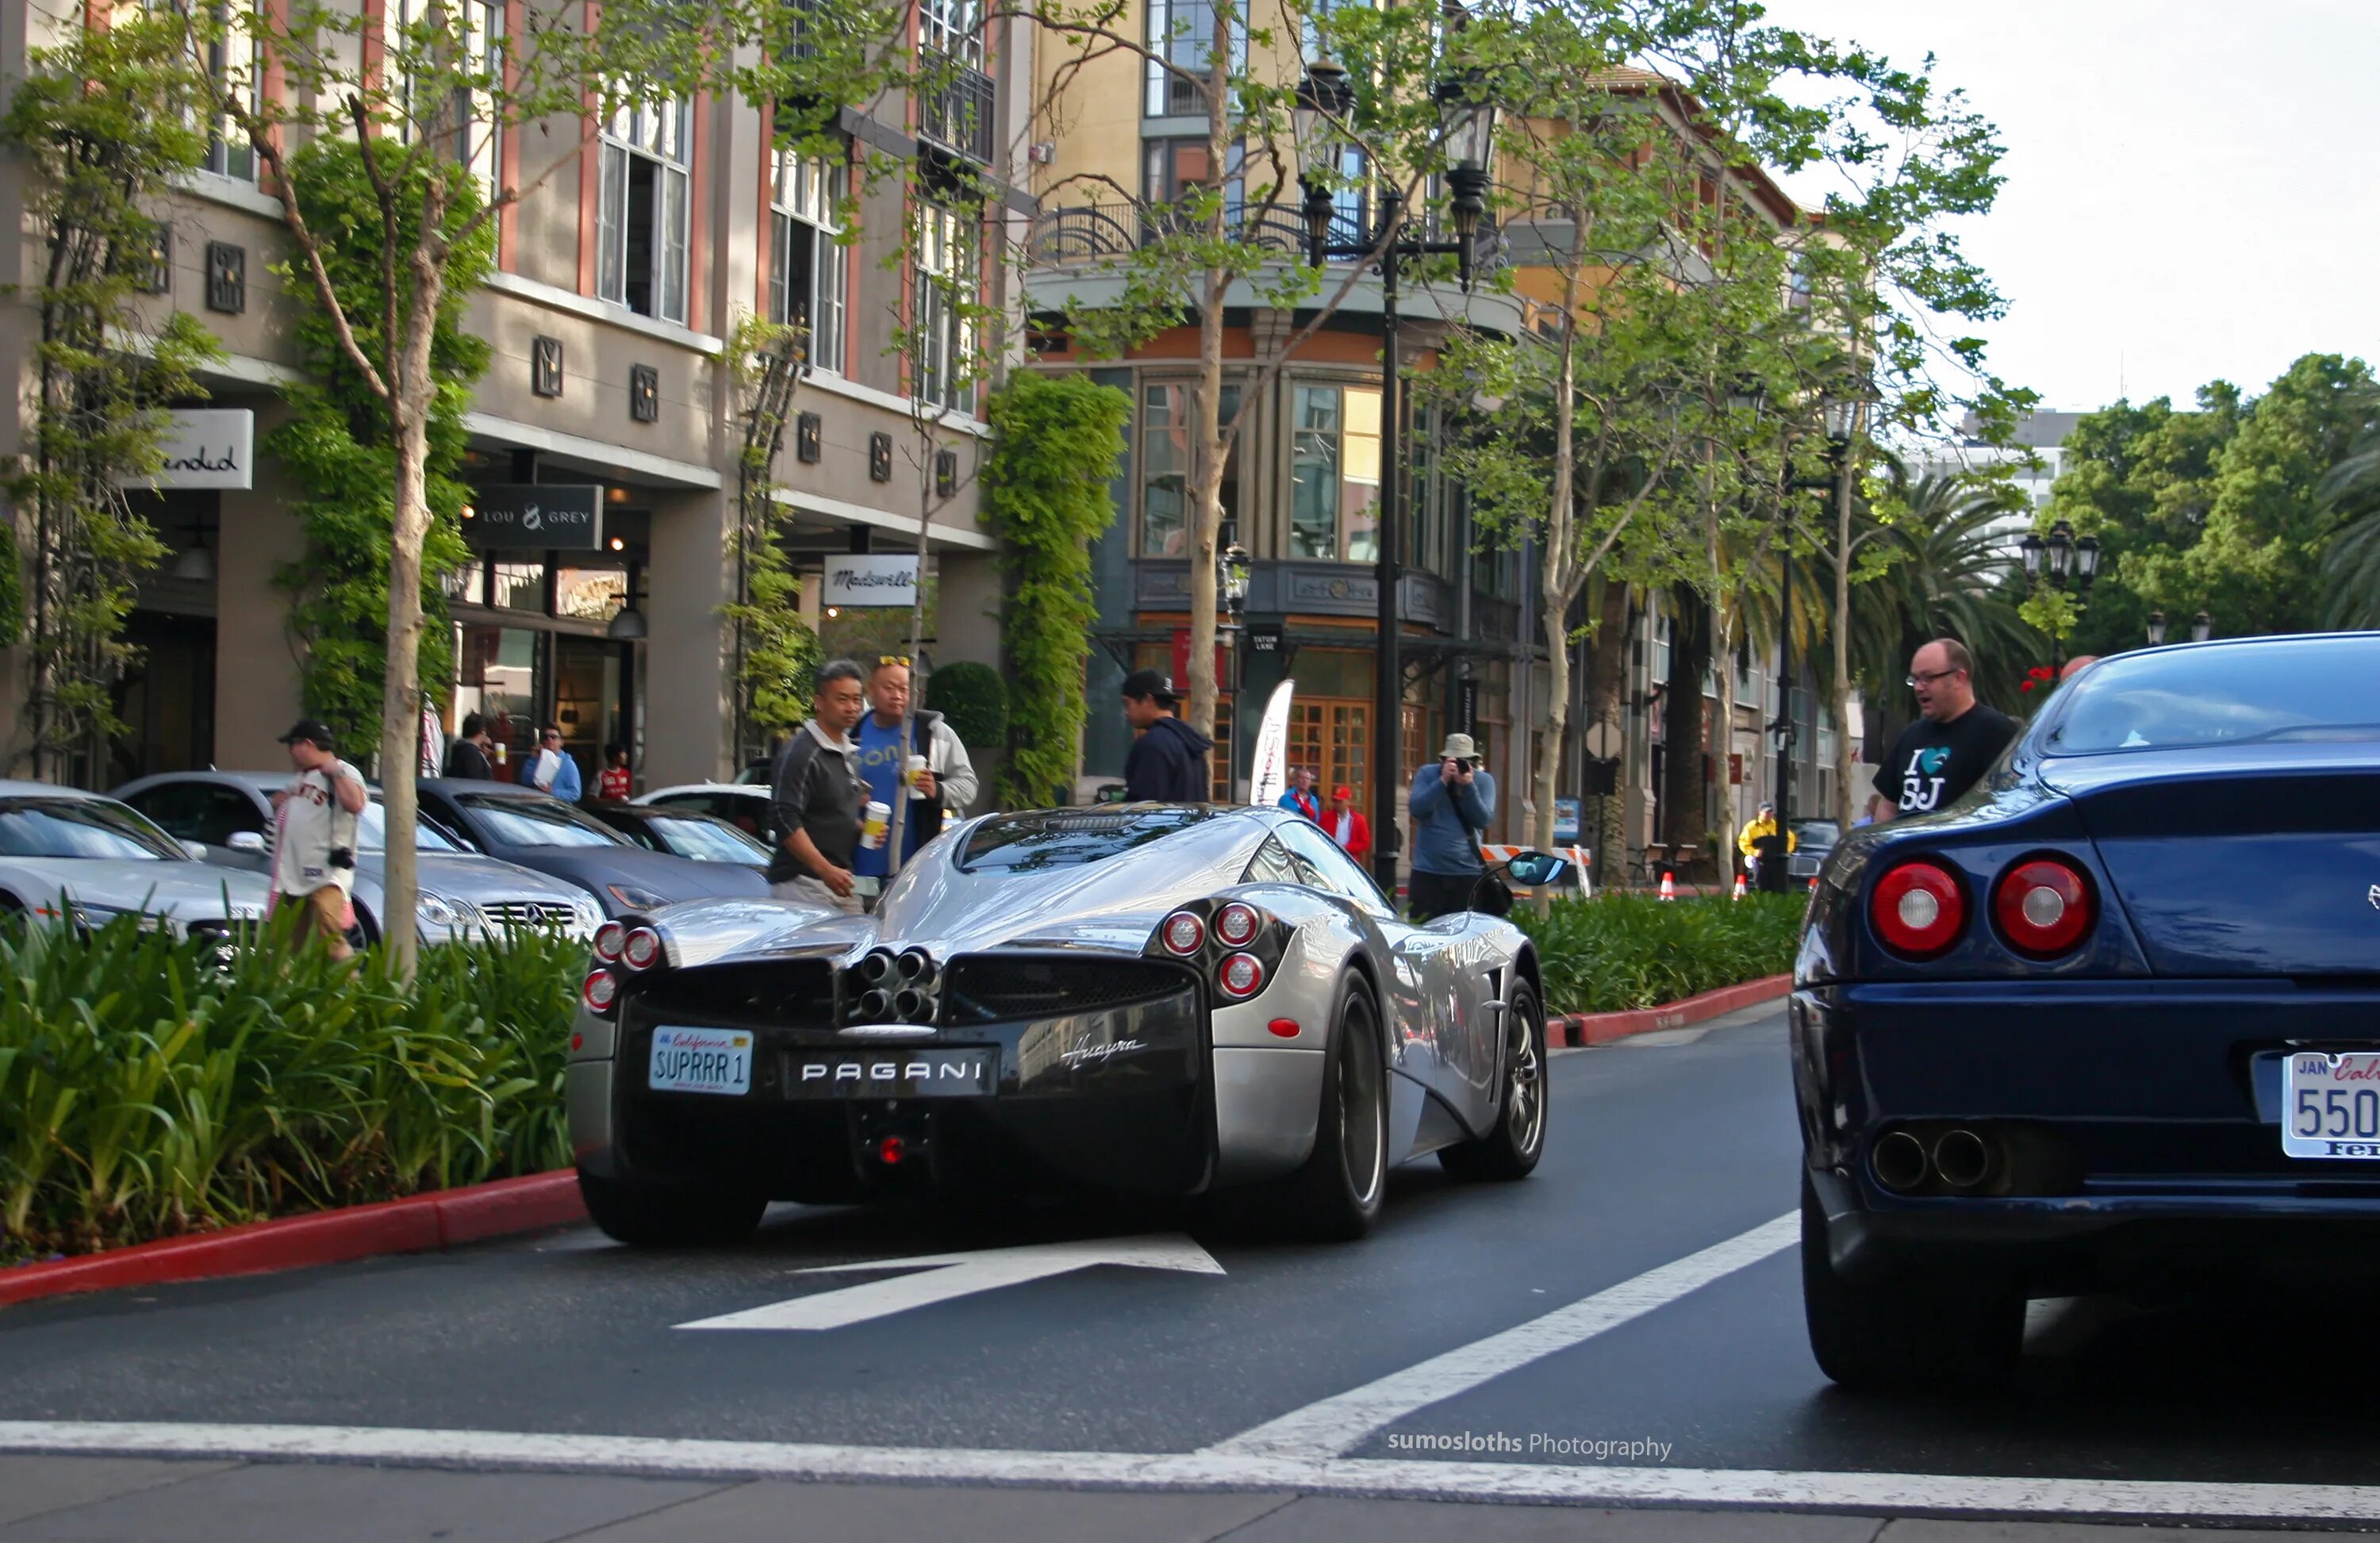 Лос Анджелес Бугатти. Бугатти в Сан Франциско. Пагани в Сан Франциско. Bugatti Veyron в Лос Анджелесе. I can see car